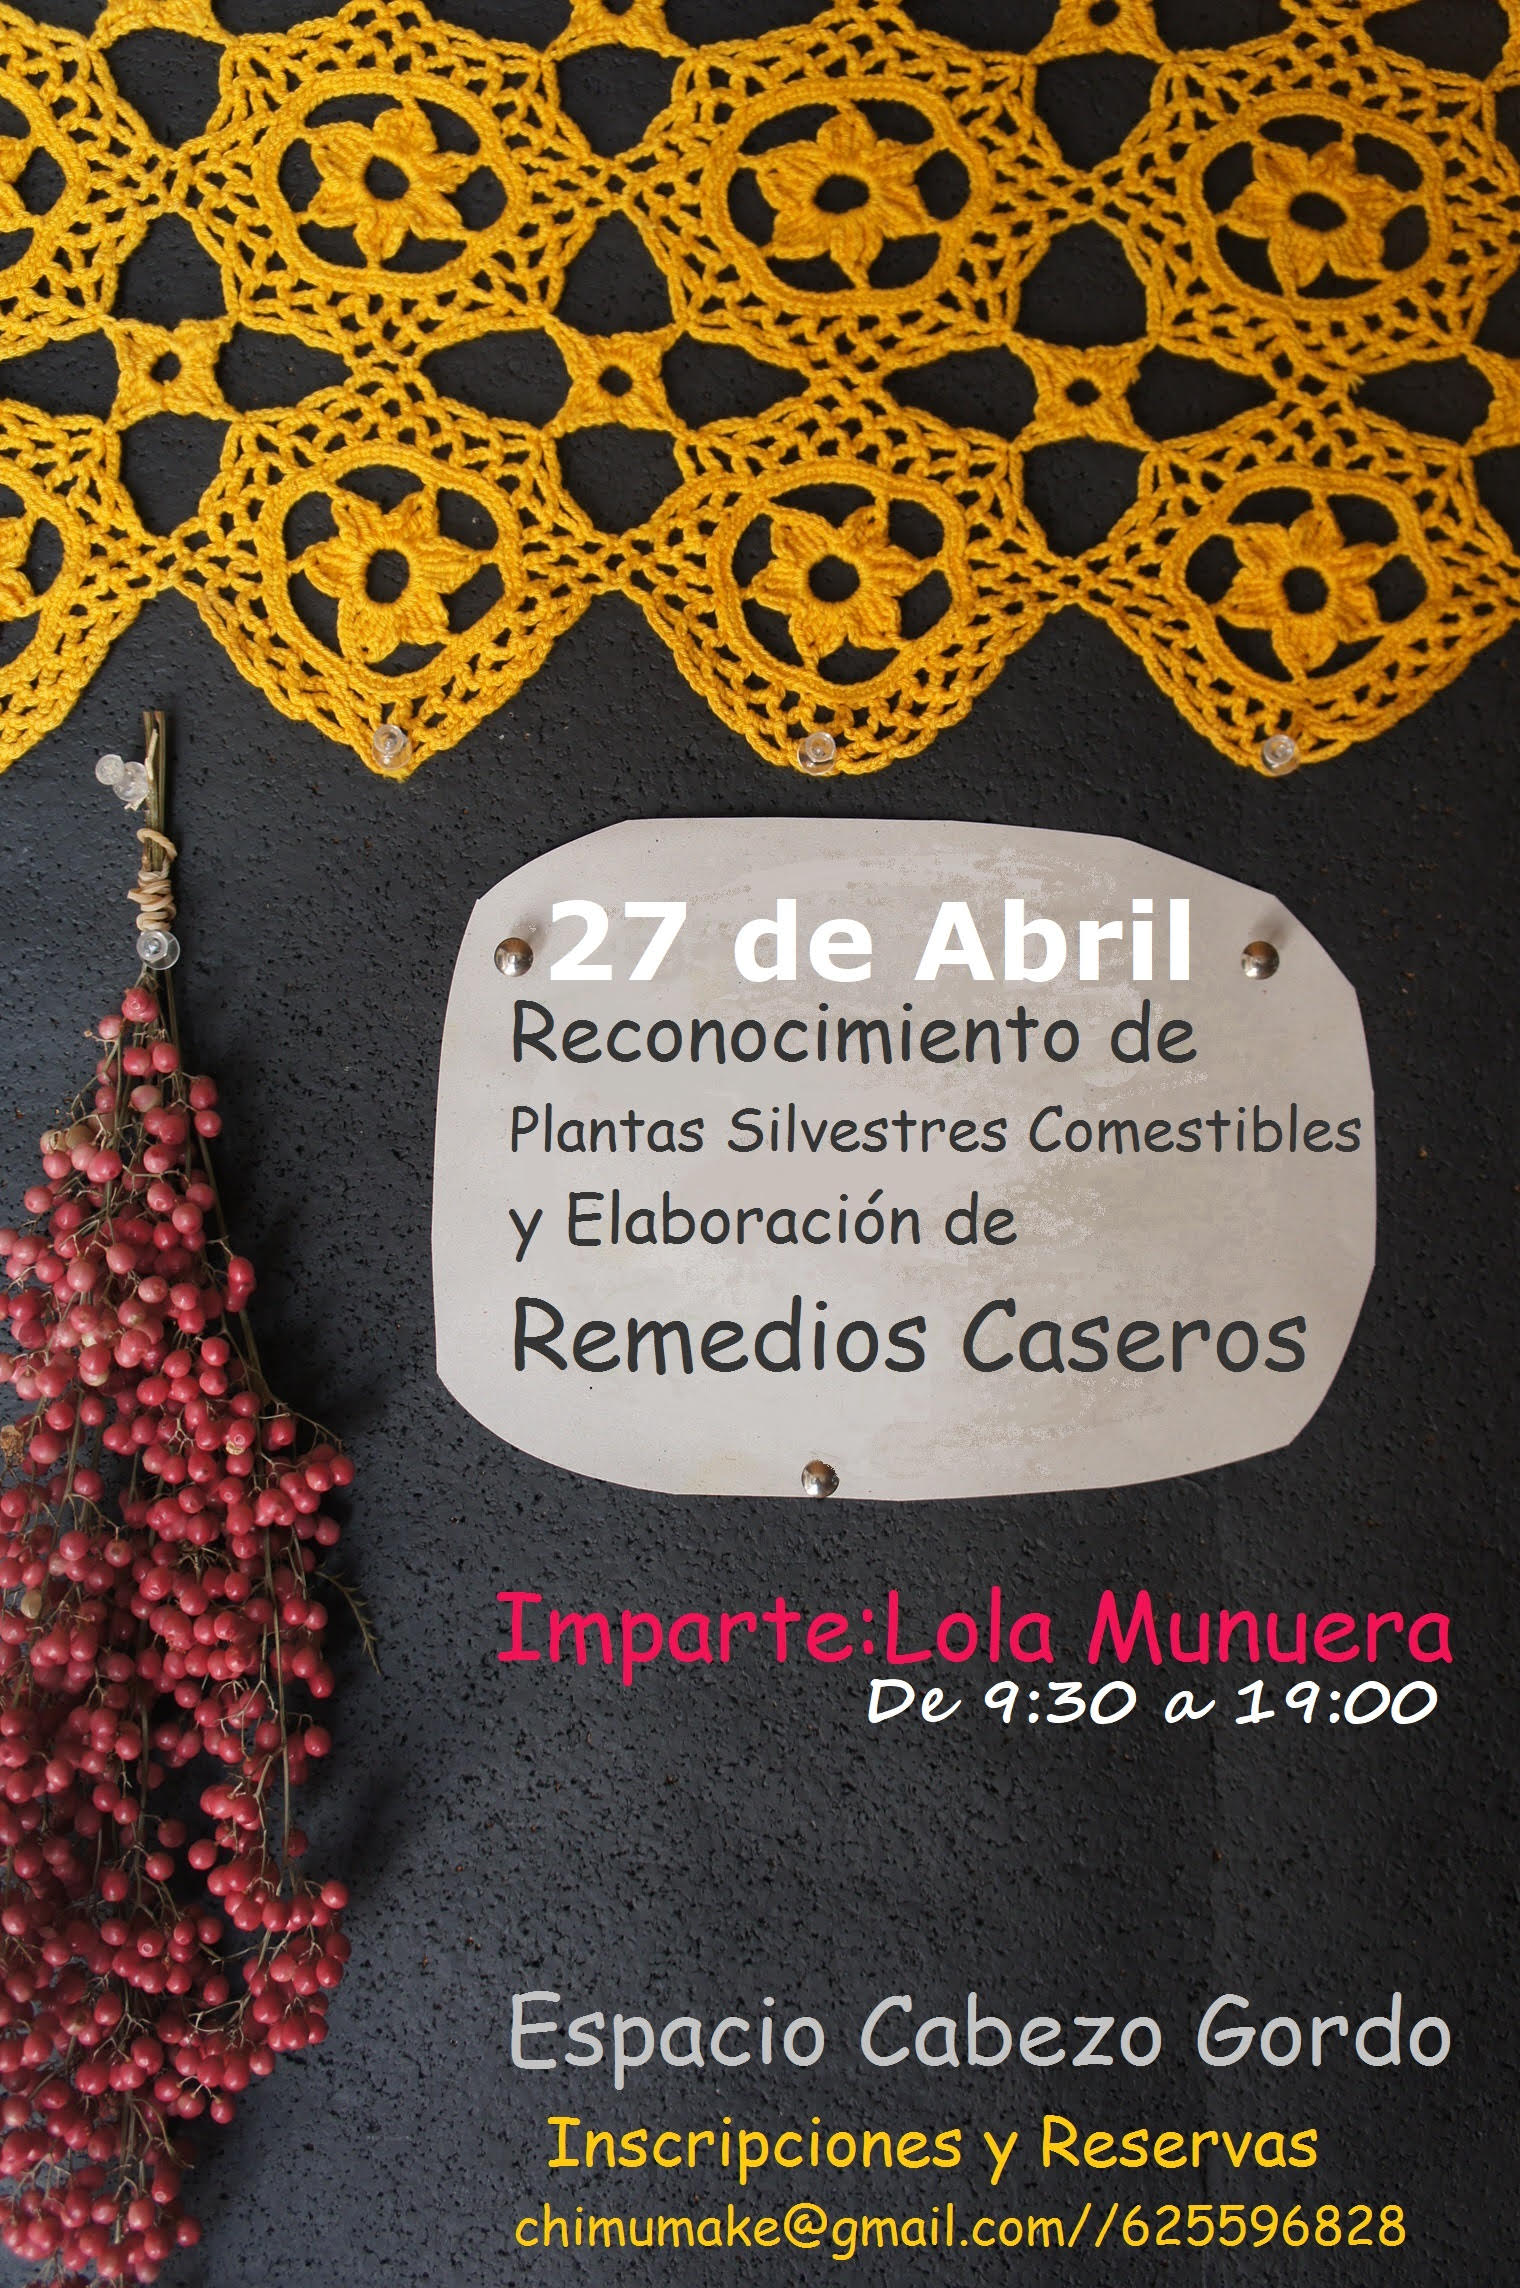 Reconocimiento de Plantas Silvestres + Remedios Caseros, con Conchi Munuera